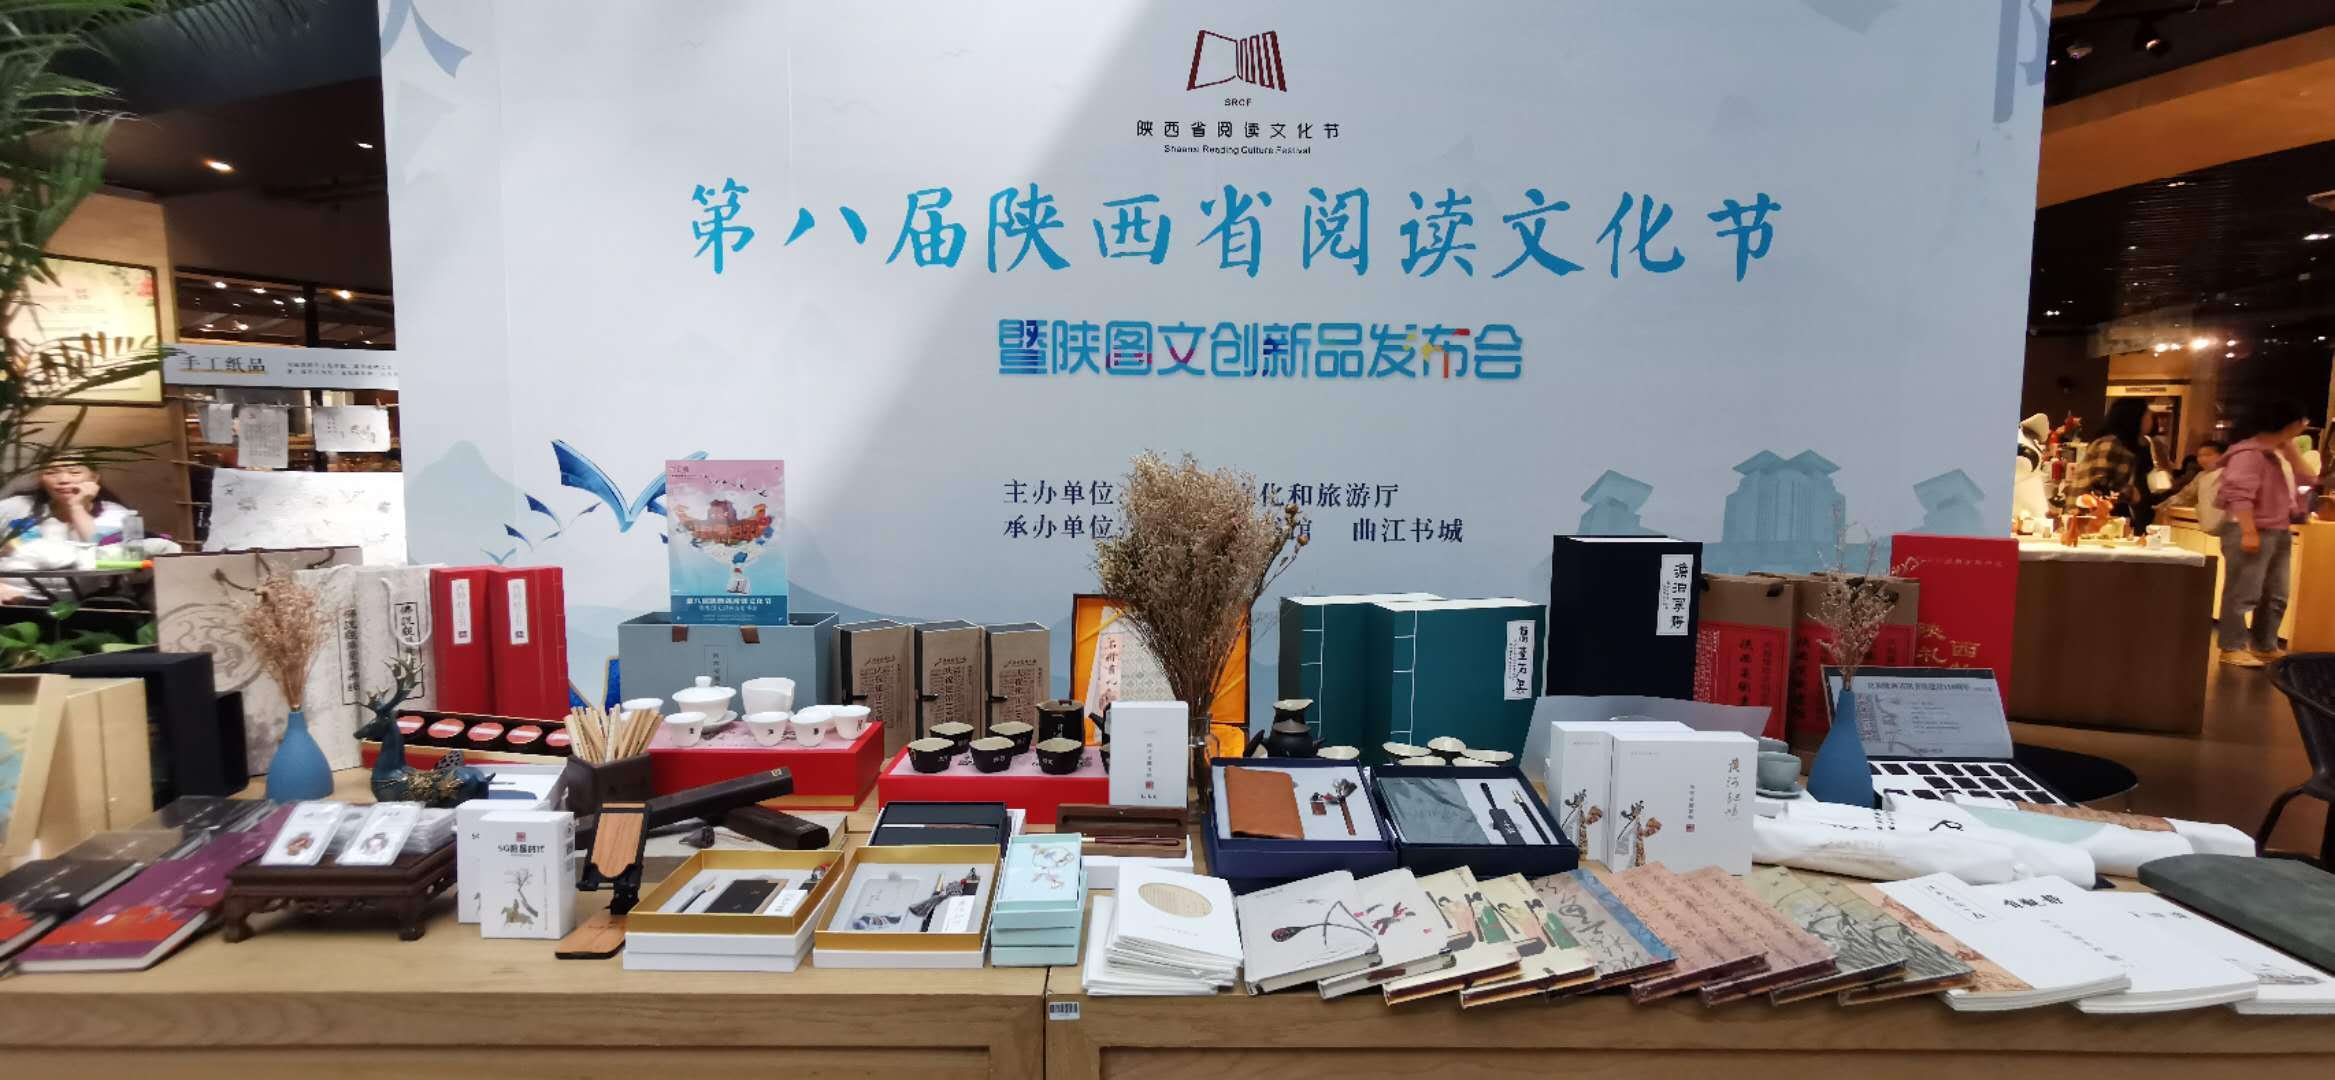 陕西省图书馆:将文创产品带上阅读文化节